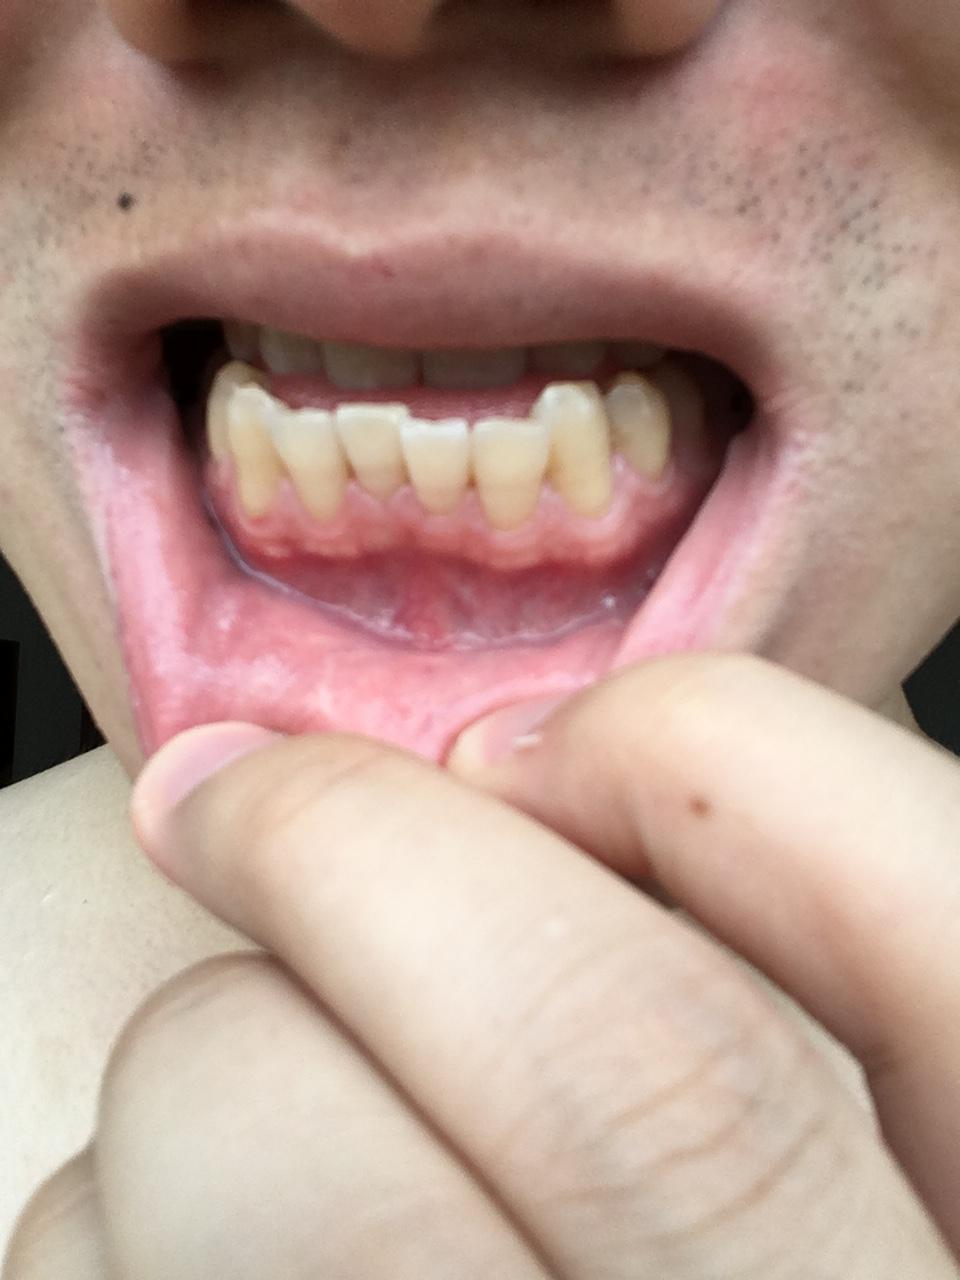 牙龈萎缩图片 初期图片